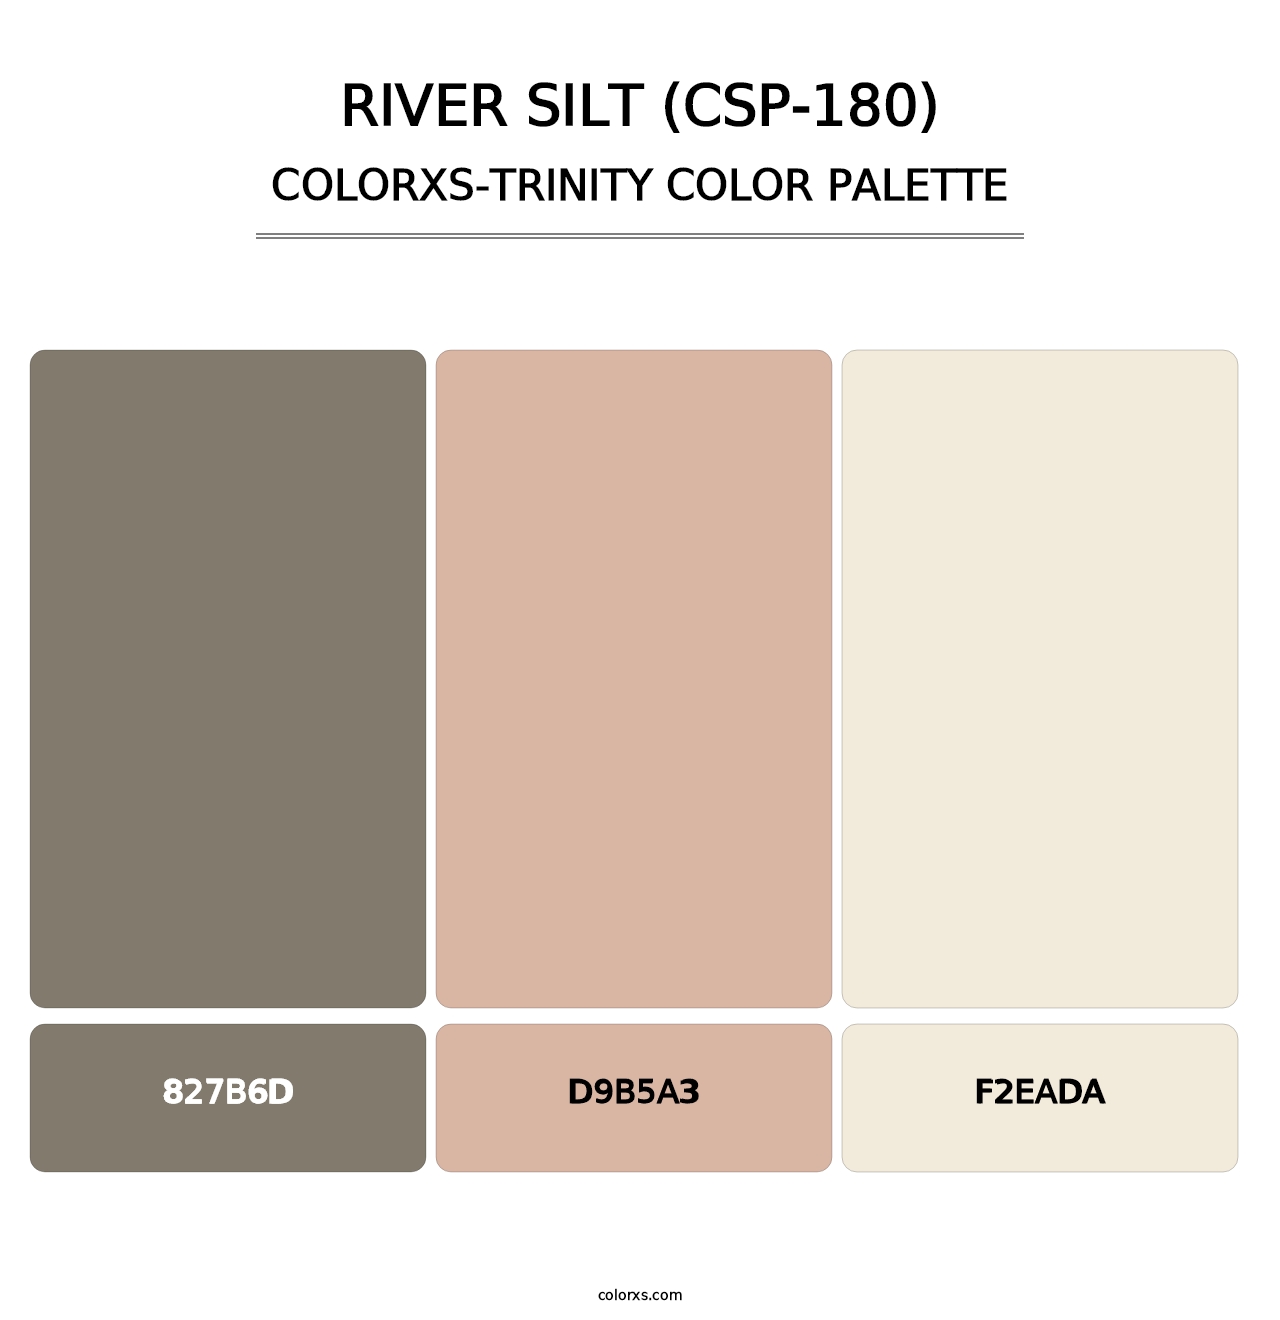 River Silt (CSP-180) - Colorxs Trinity Palette